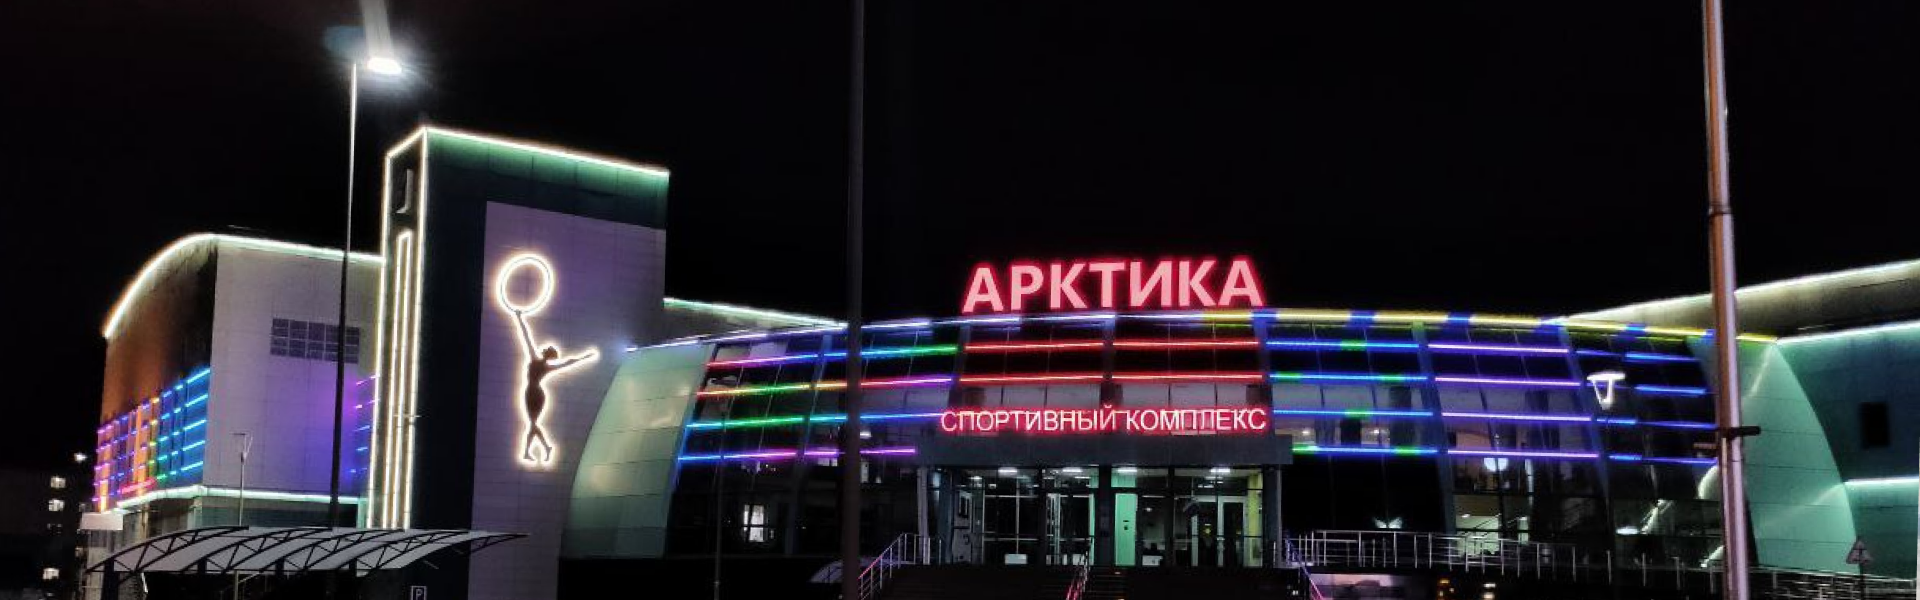 Архитектурное освещение спортивного комплекса «Арктика»